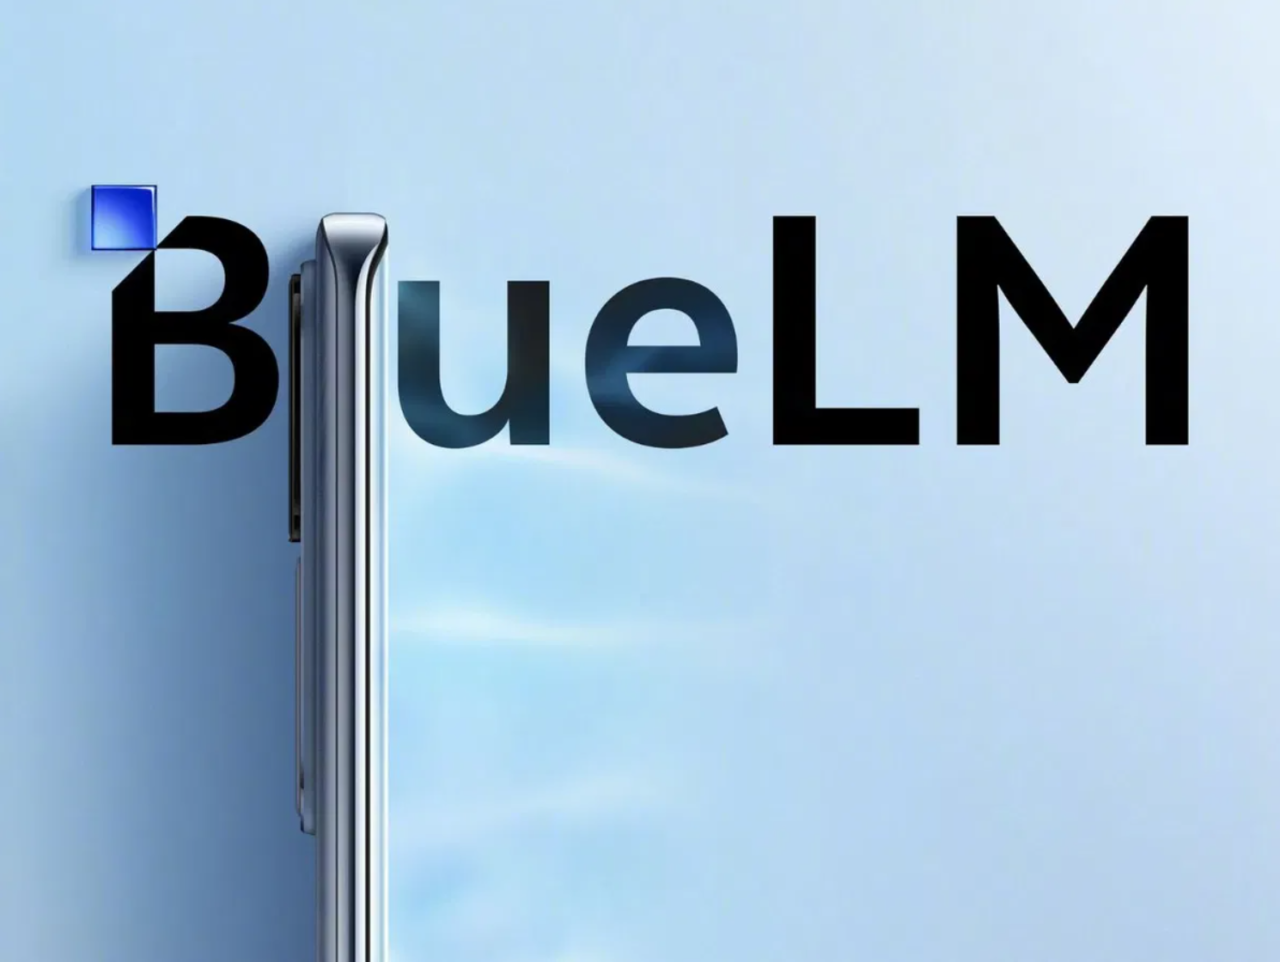 Logo "BlueLM" z przyciemnionymi literami na błękitnym tle z metalicznym, lśniącym przedmiotem, który wygląda jak krawędź urządzenia elektronicznego.